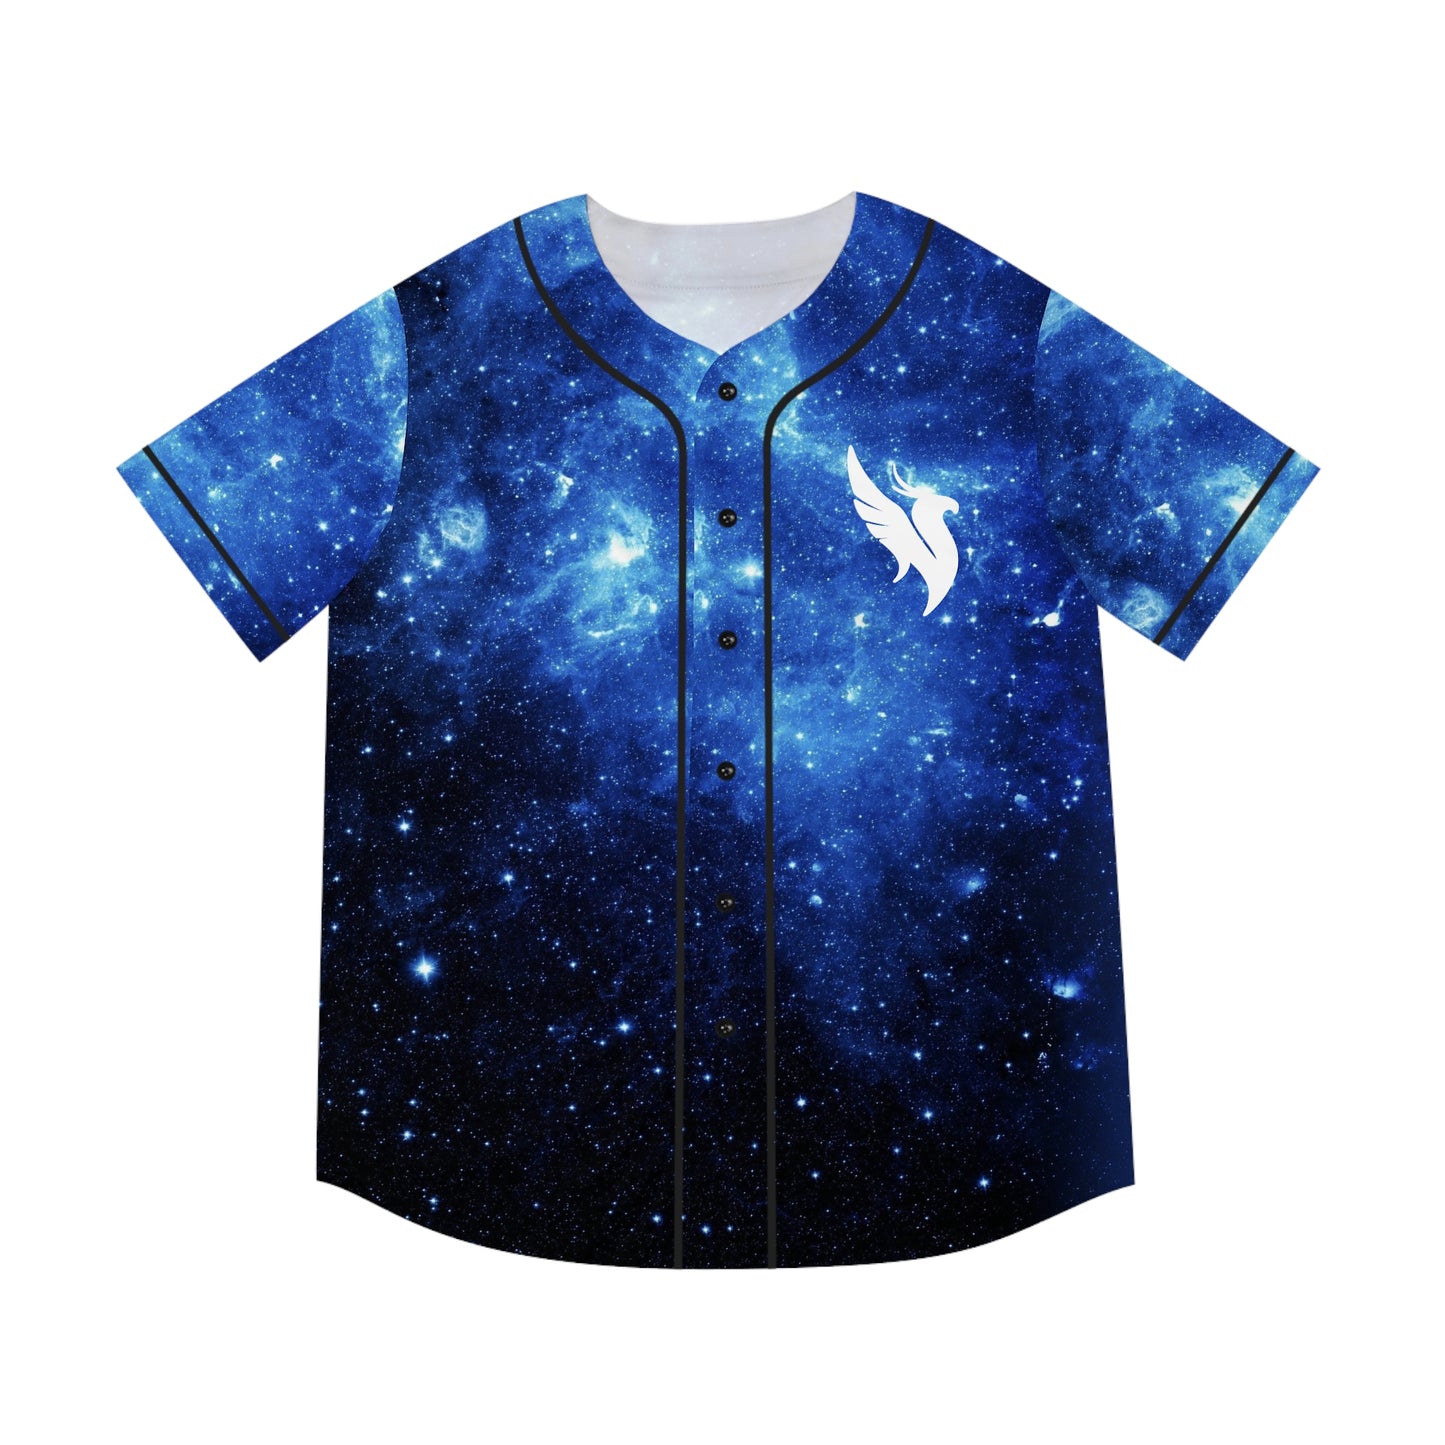 Illenium baseball jersey  Illenium, Clothes design, Fashion